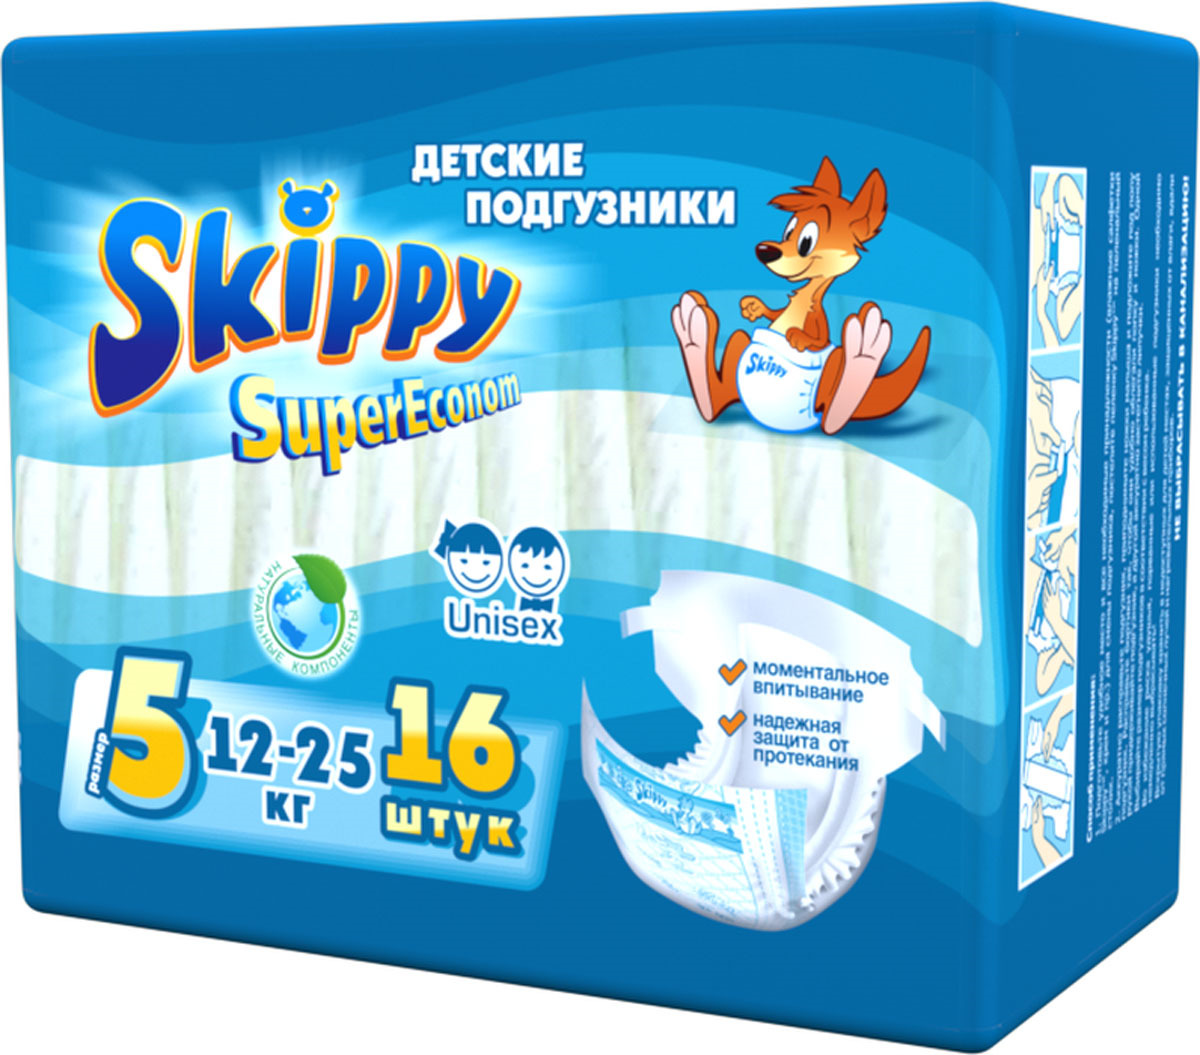 Подгузники детские Skippy Super Econom, 12-25 кг, 7048, 16 шт